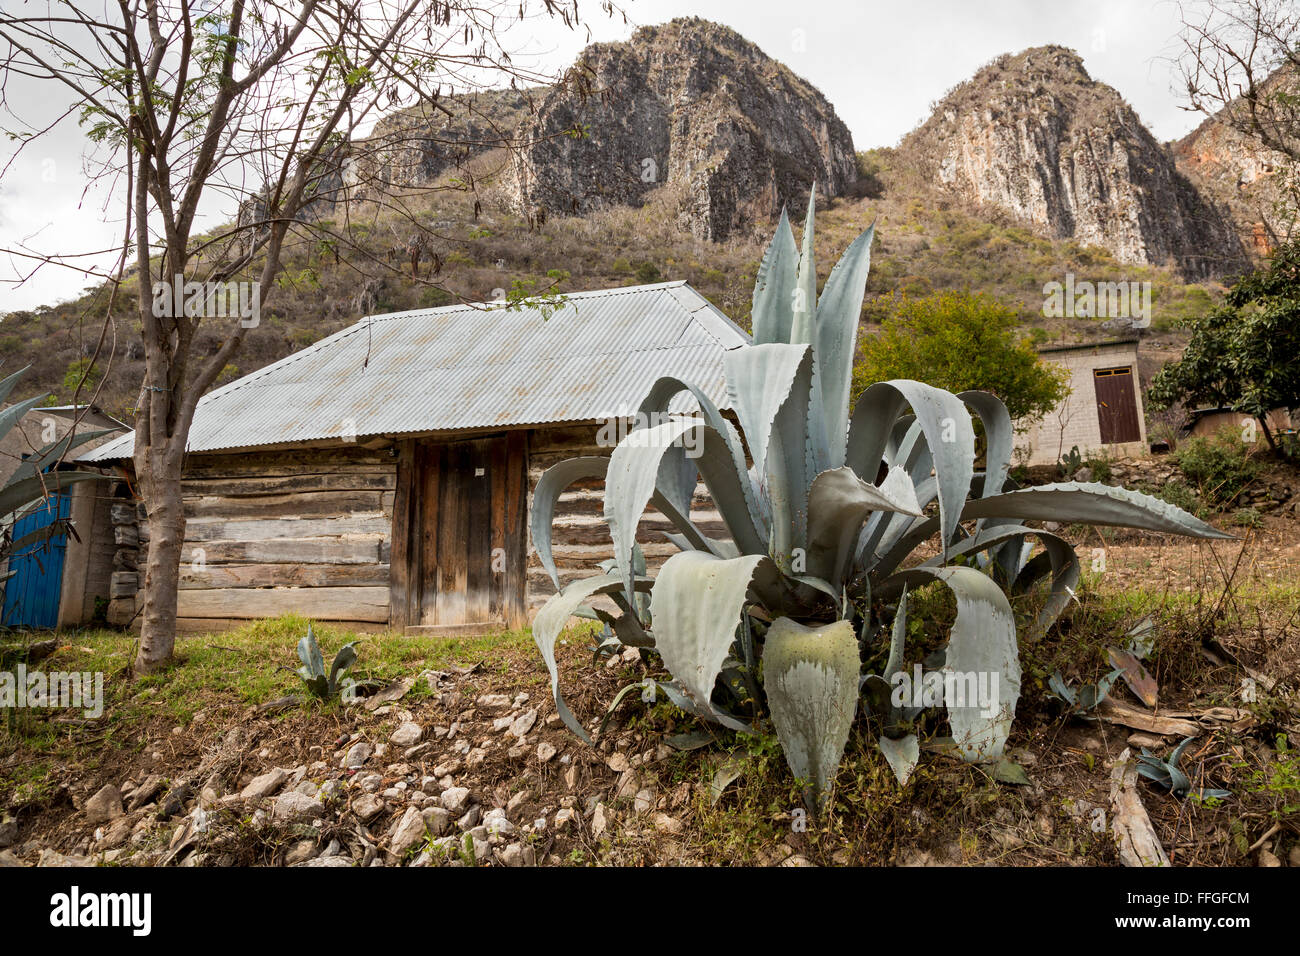 Santiago Apoala, Oaxaca, Messico - un maguey (agave) impianto nel villaggio di Apoala, un piccolo paese di montagna. Foto Stock